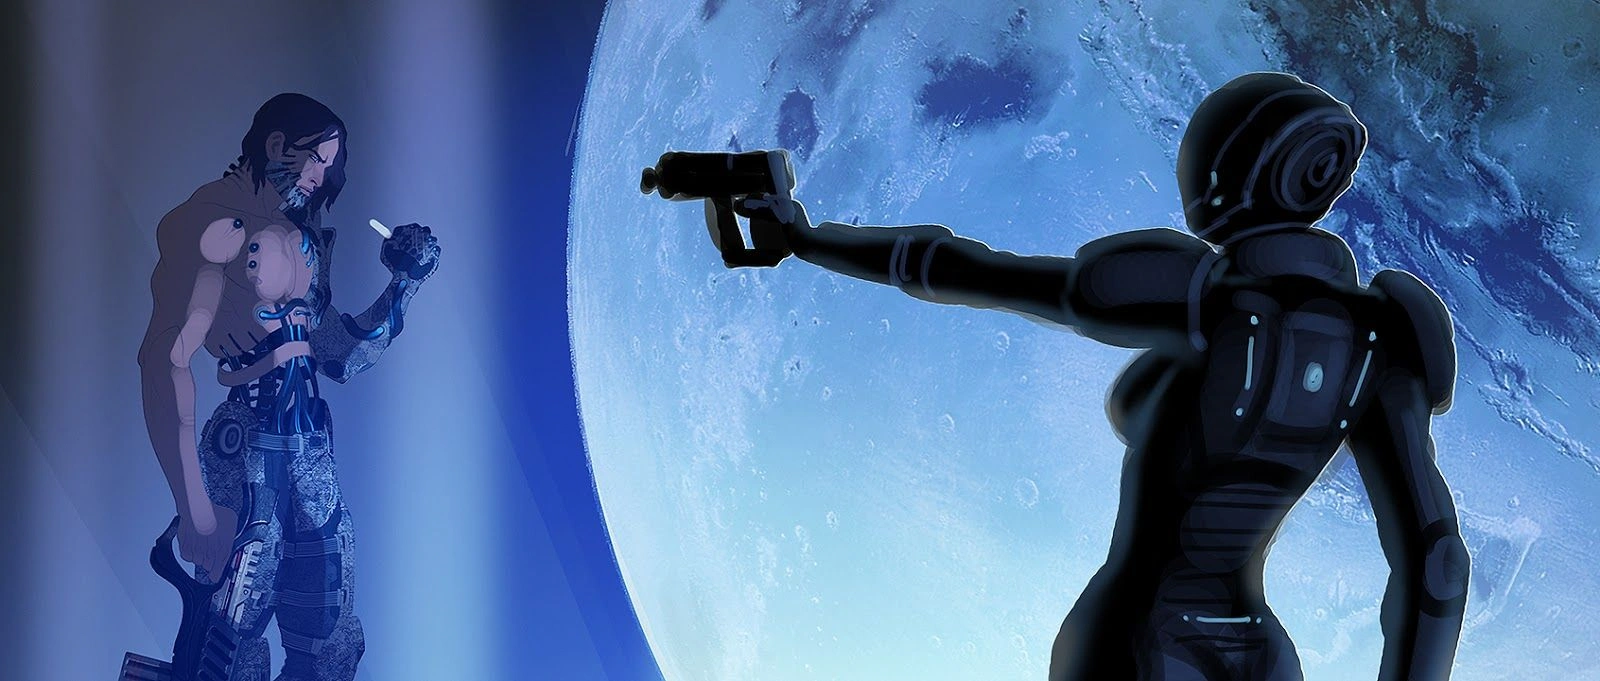 [Mass Effect] Концептуальный рисунок: Эшли и модифицированный Шепард.